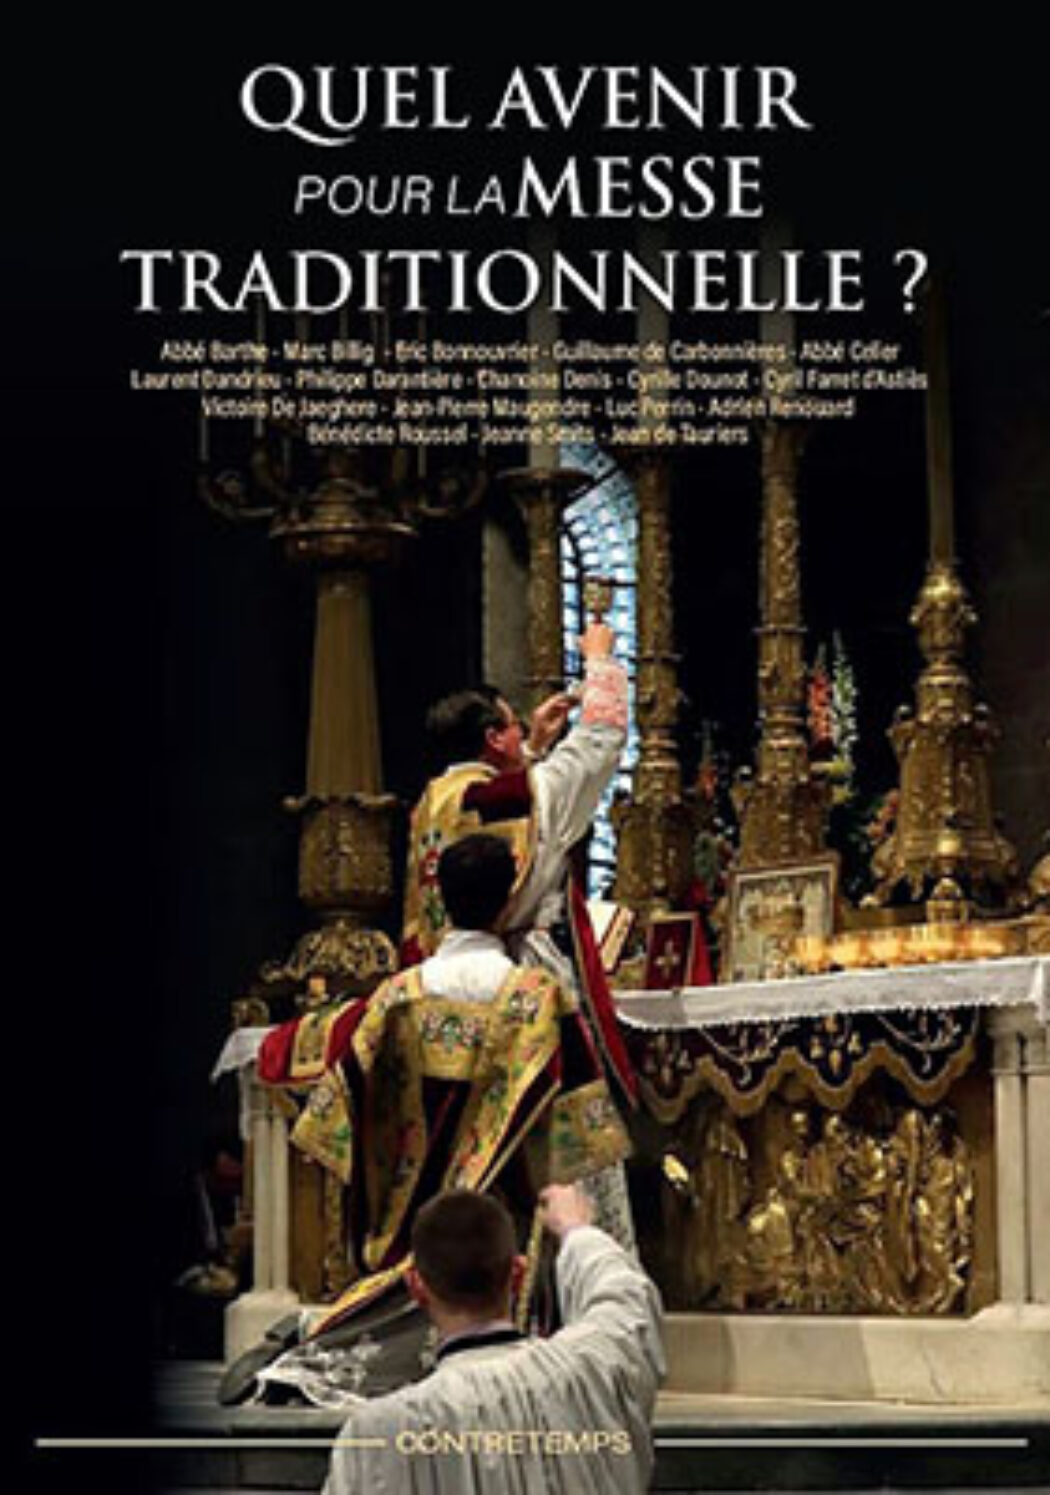 Publication des Actes du colloque sur l’avenir de la messe traditionnelle. En attendant le prochain colloque